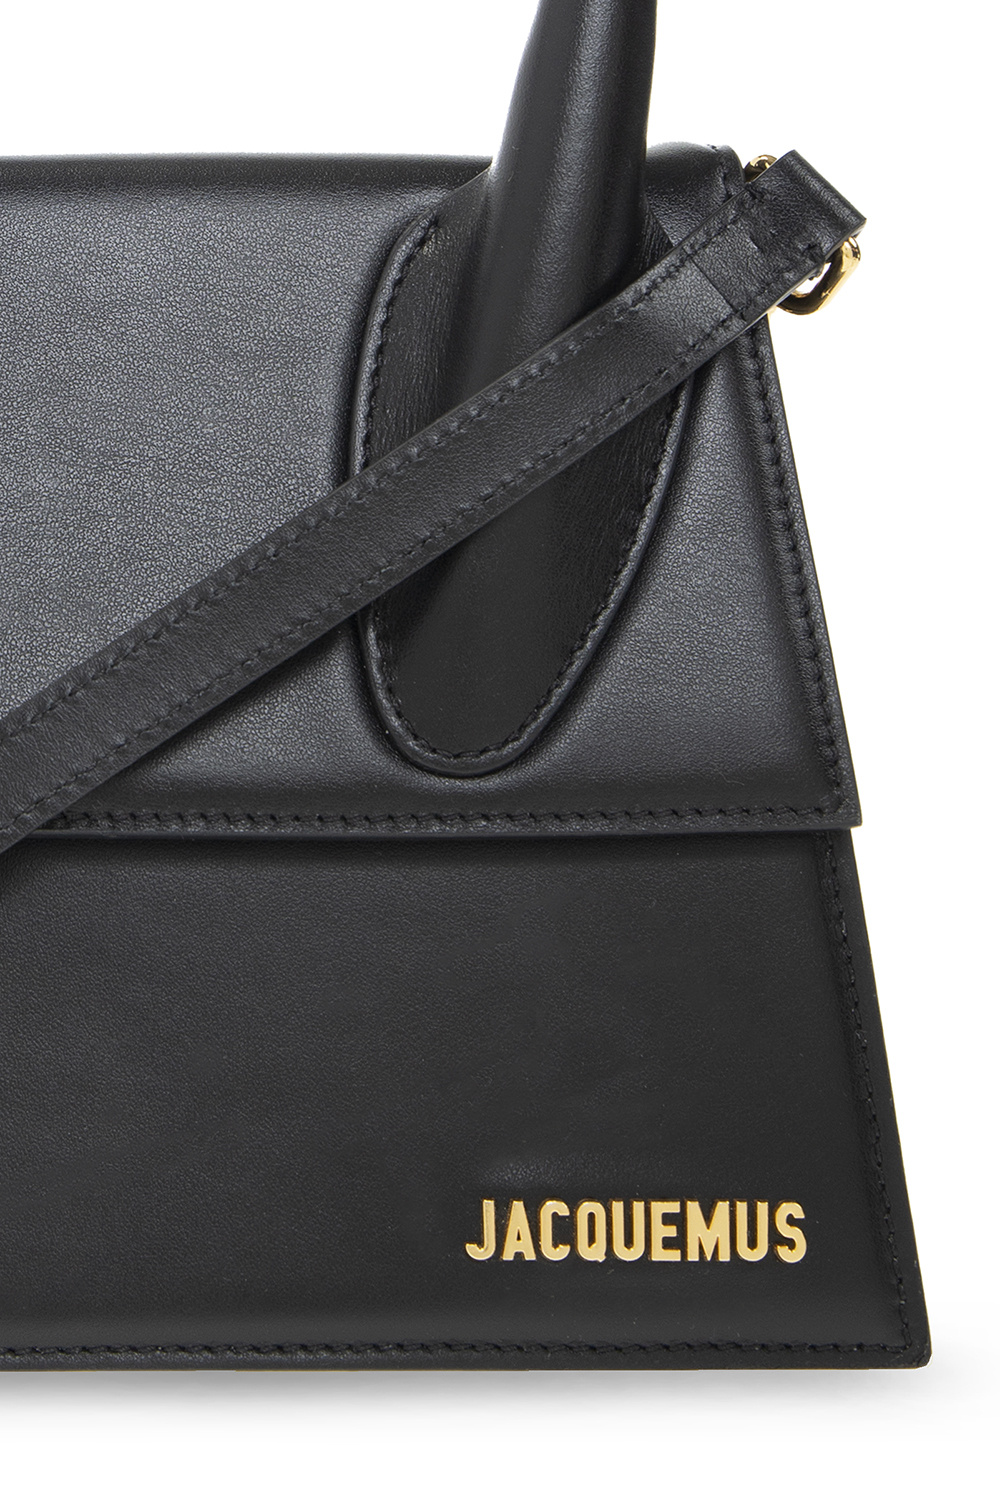 Jacquemus ‘Le Grand’ shoulder Owens bag